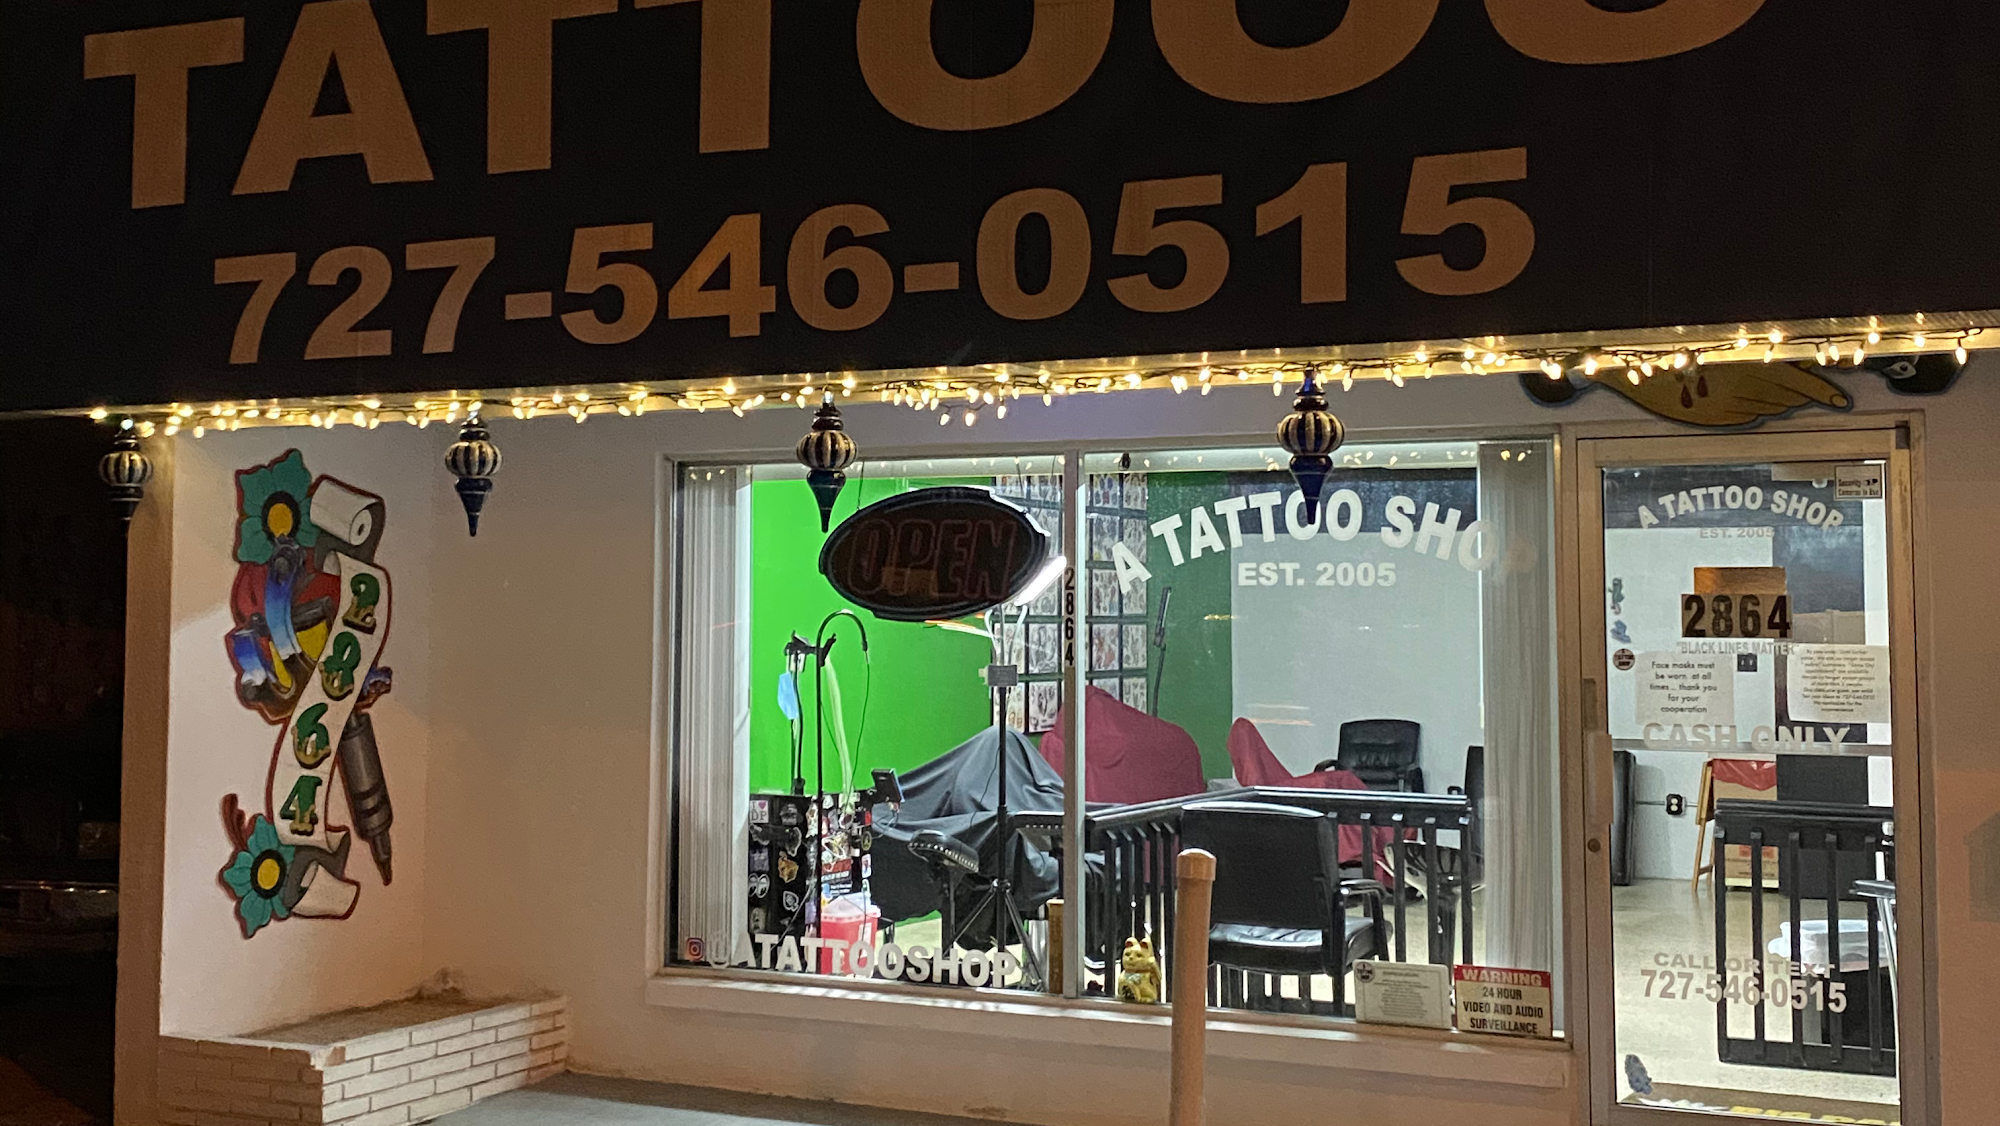 A Tattoo Shop